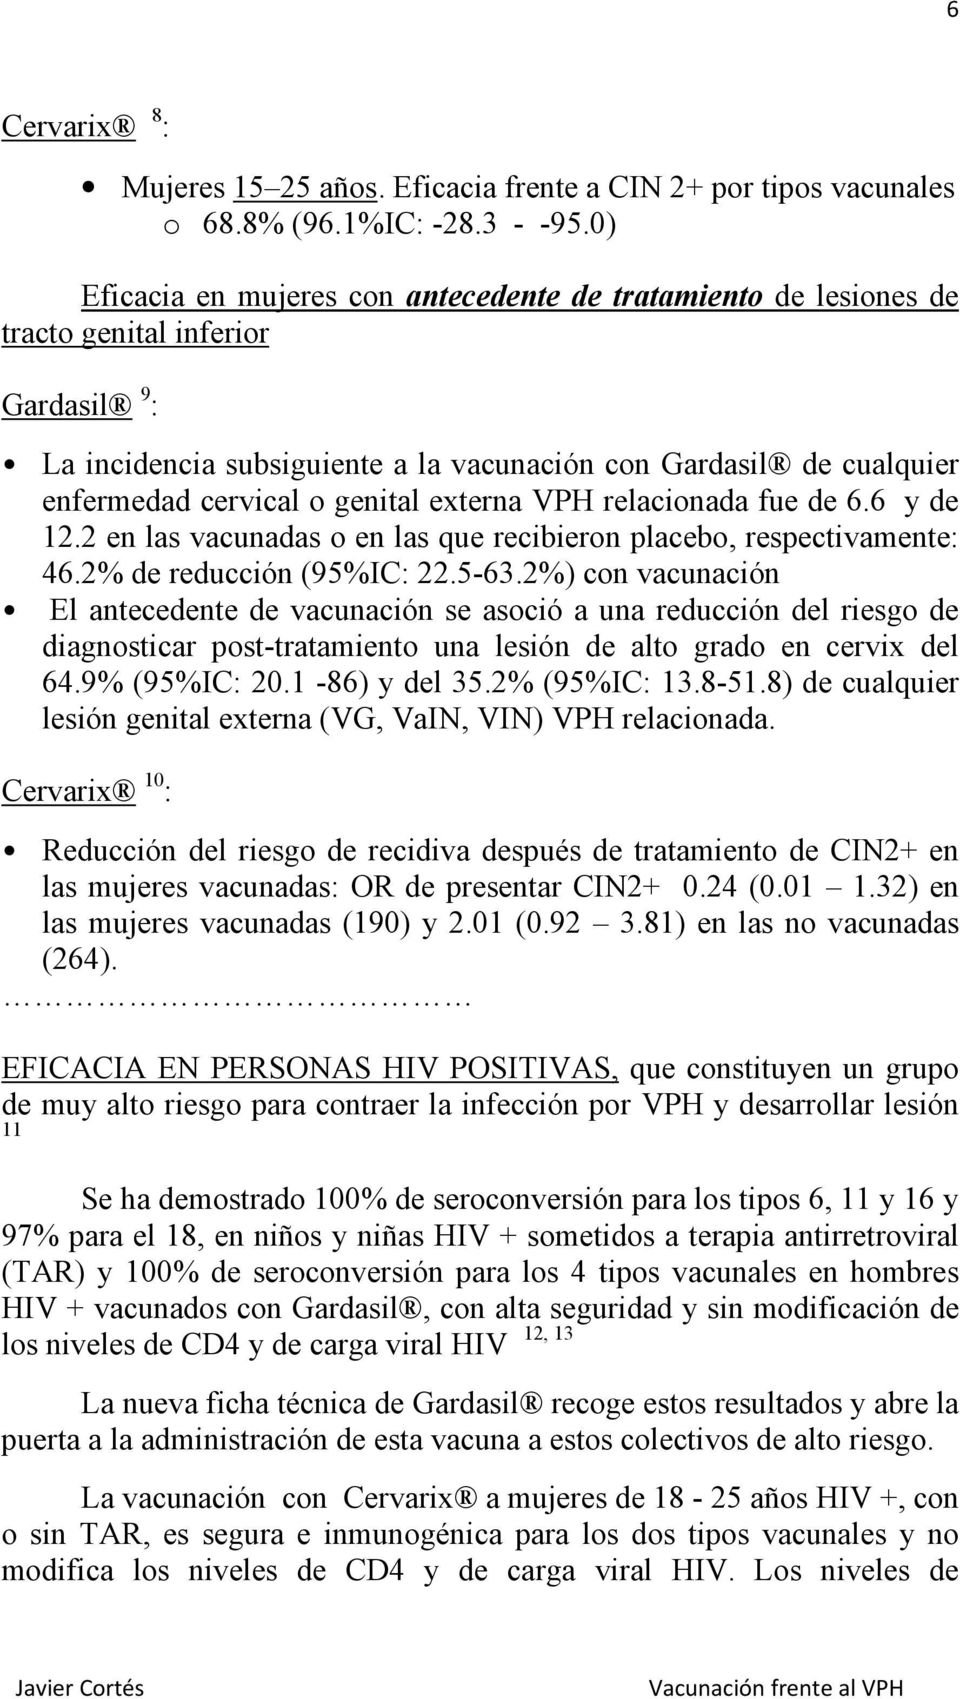 genital externa VPH relacionada fue de 6.6 y de 12.2 en las vacunadas o en las que recibieron placebo, respectivamente: 46.2% de reducción (95%IC: 22.5-63.